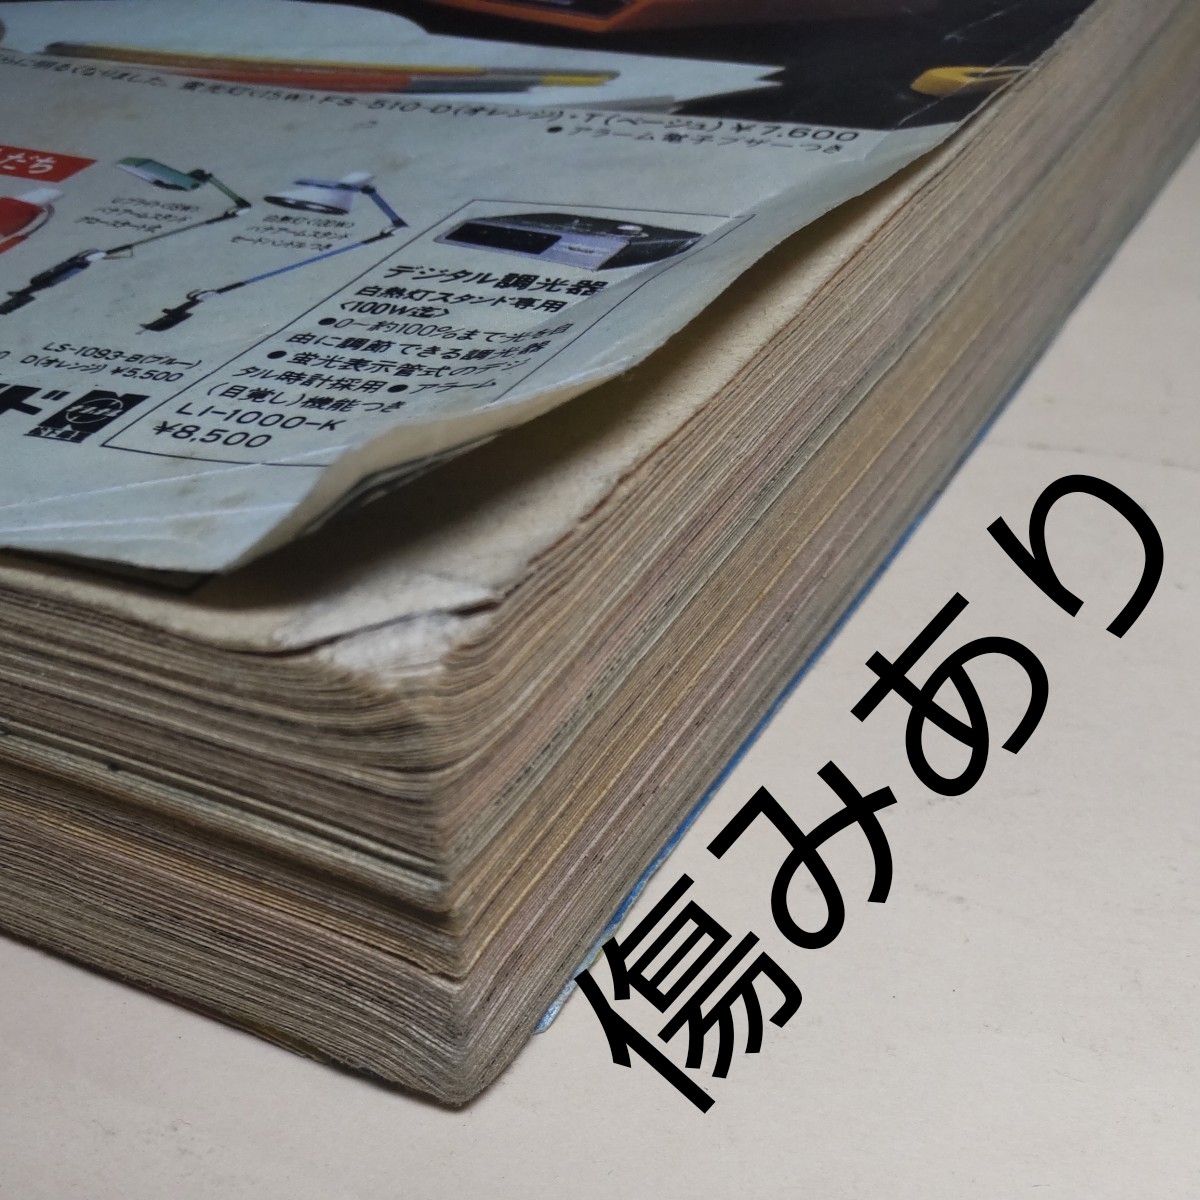 少年ビッグコミック★7★1979年4月10日発売